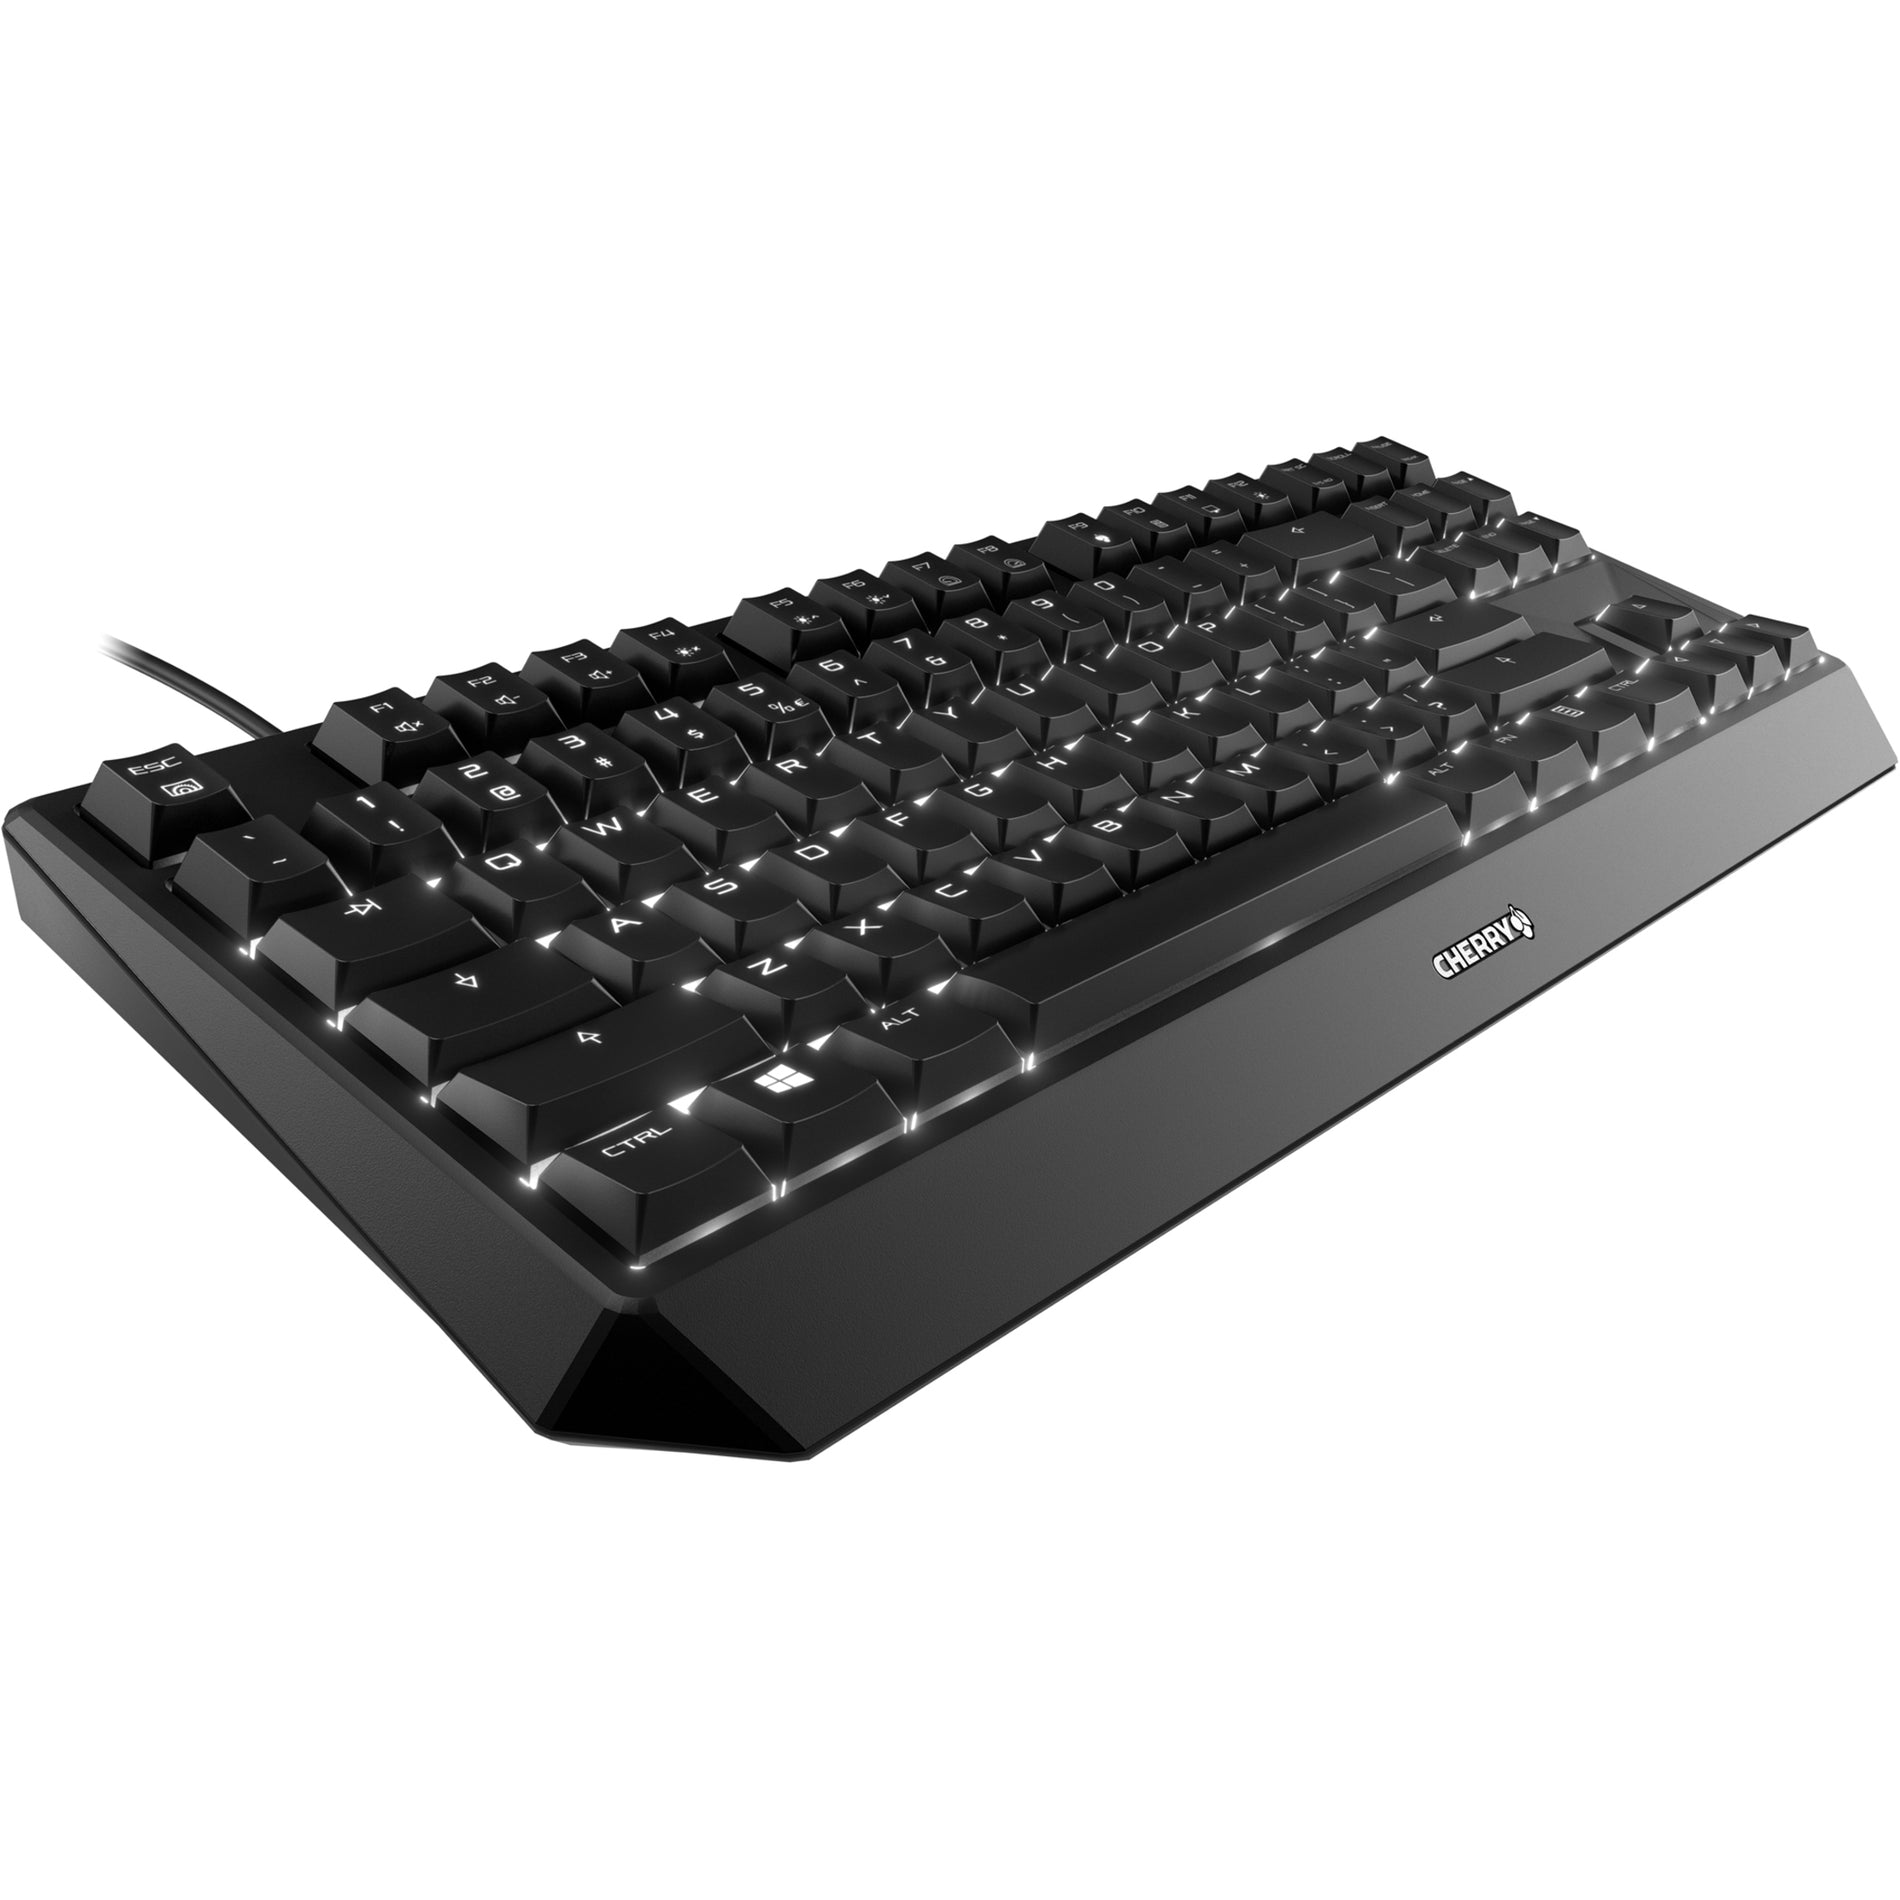 CHERRY G80-3811LYAEU-2 MX BOARD 1.0 Keybaord, TKL Wired Mechanical Keyboard, RGB LED Backlight, 87 Keys